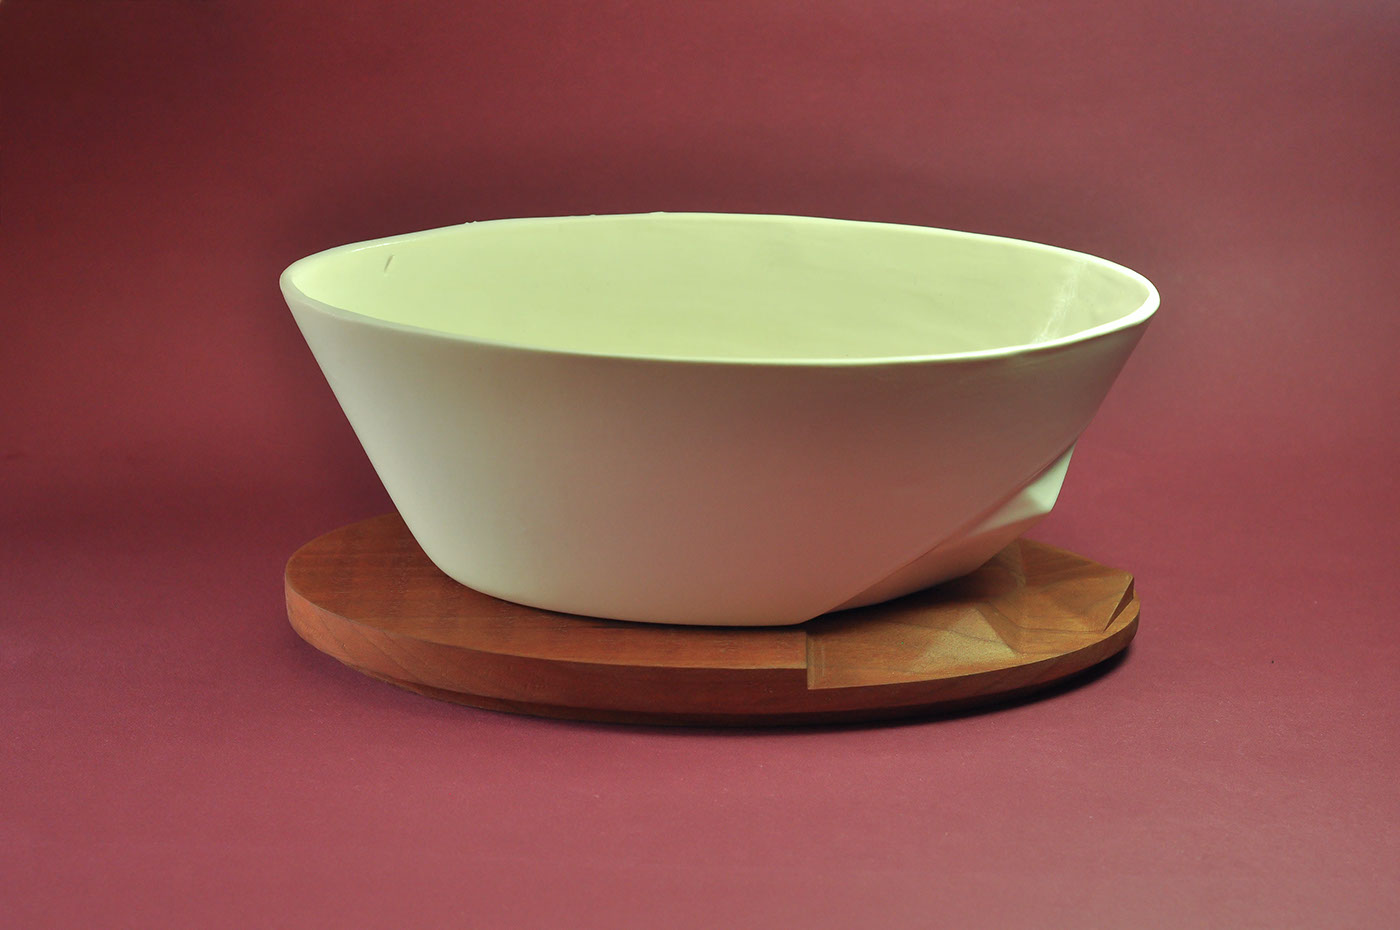 ceramic wood bowl cnc ceramica impressão 3d 3d printing